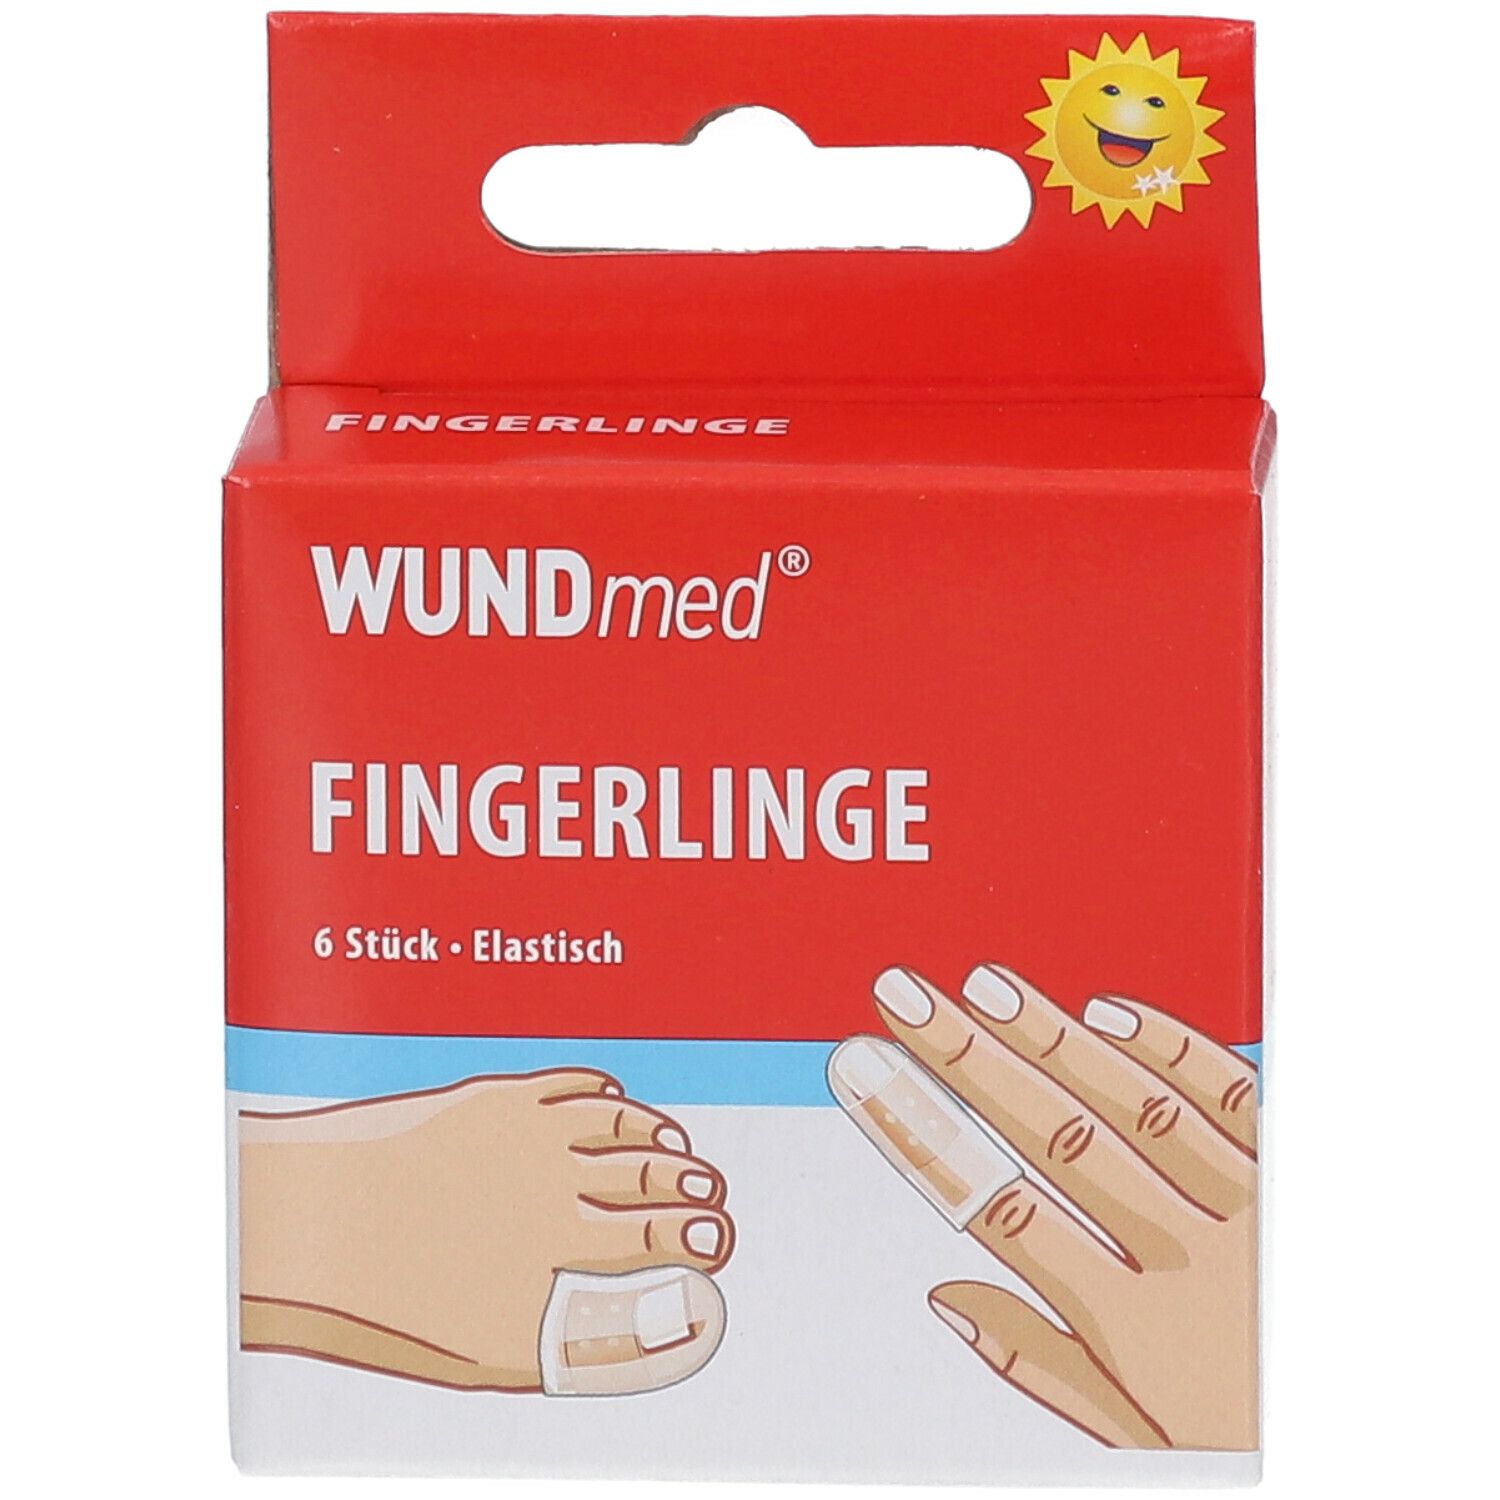 WUNDmed® Fingerlinge